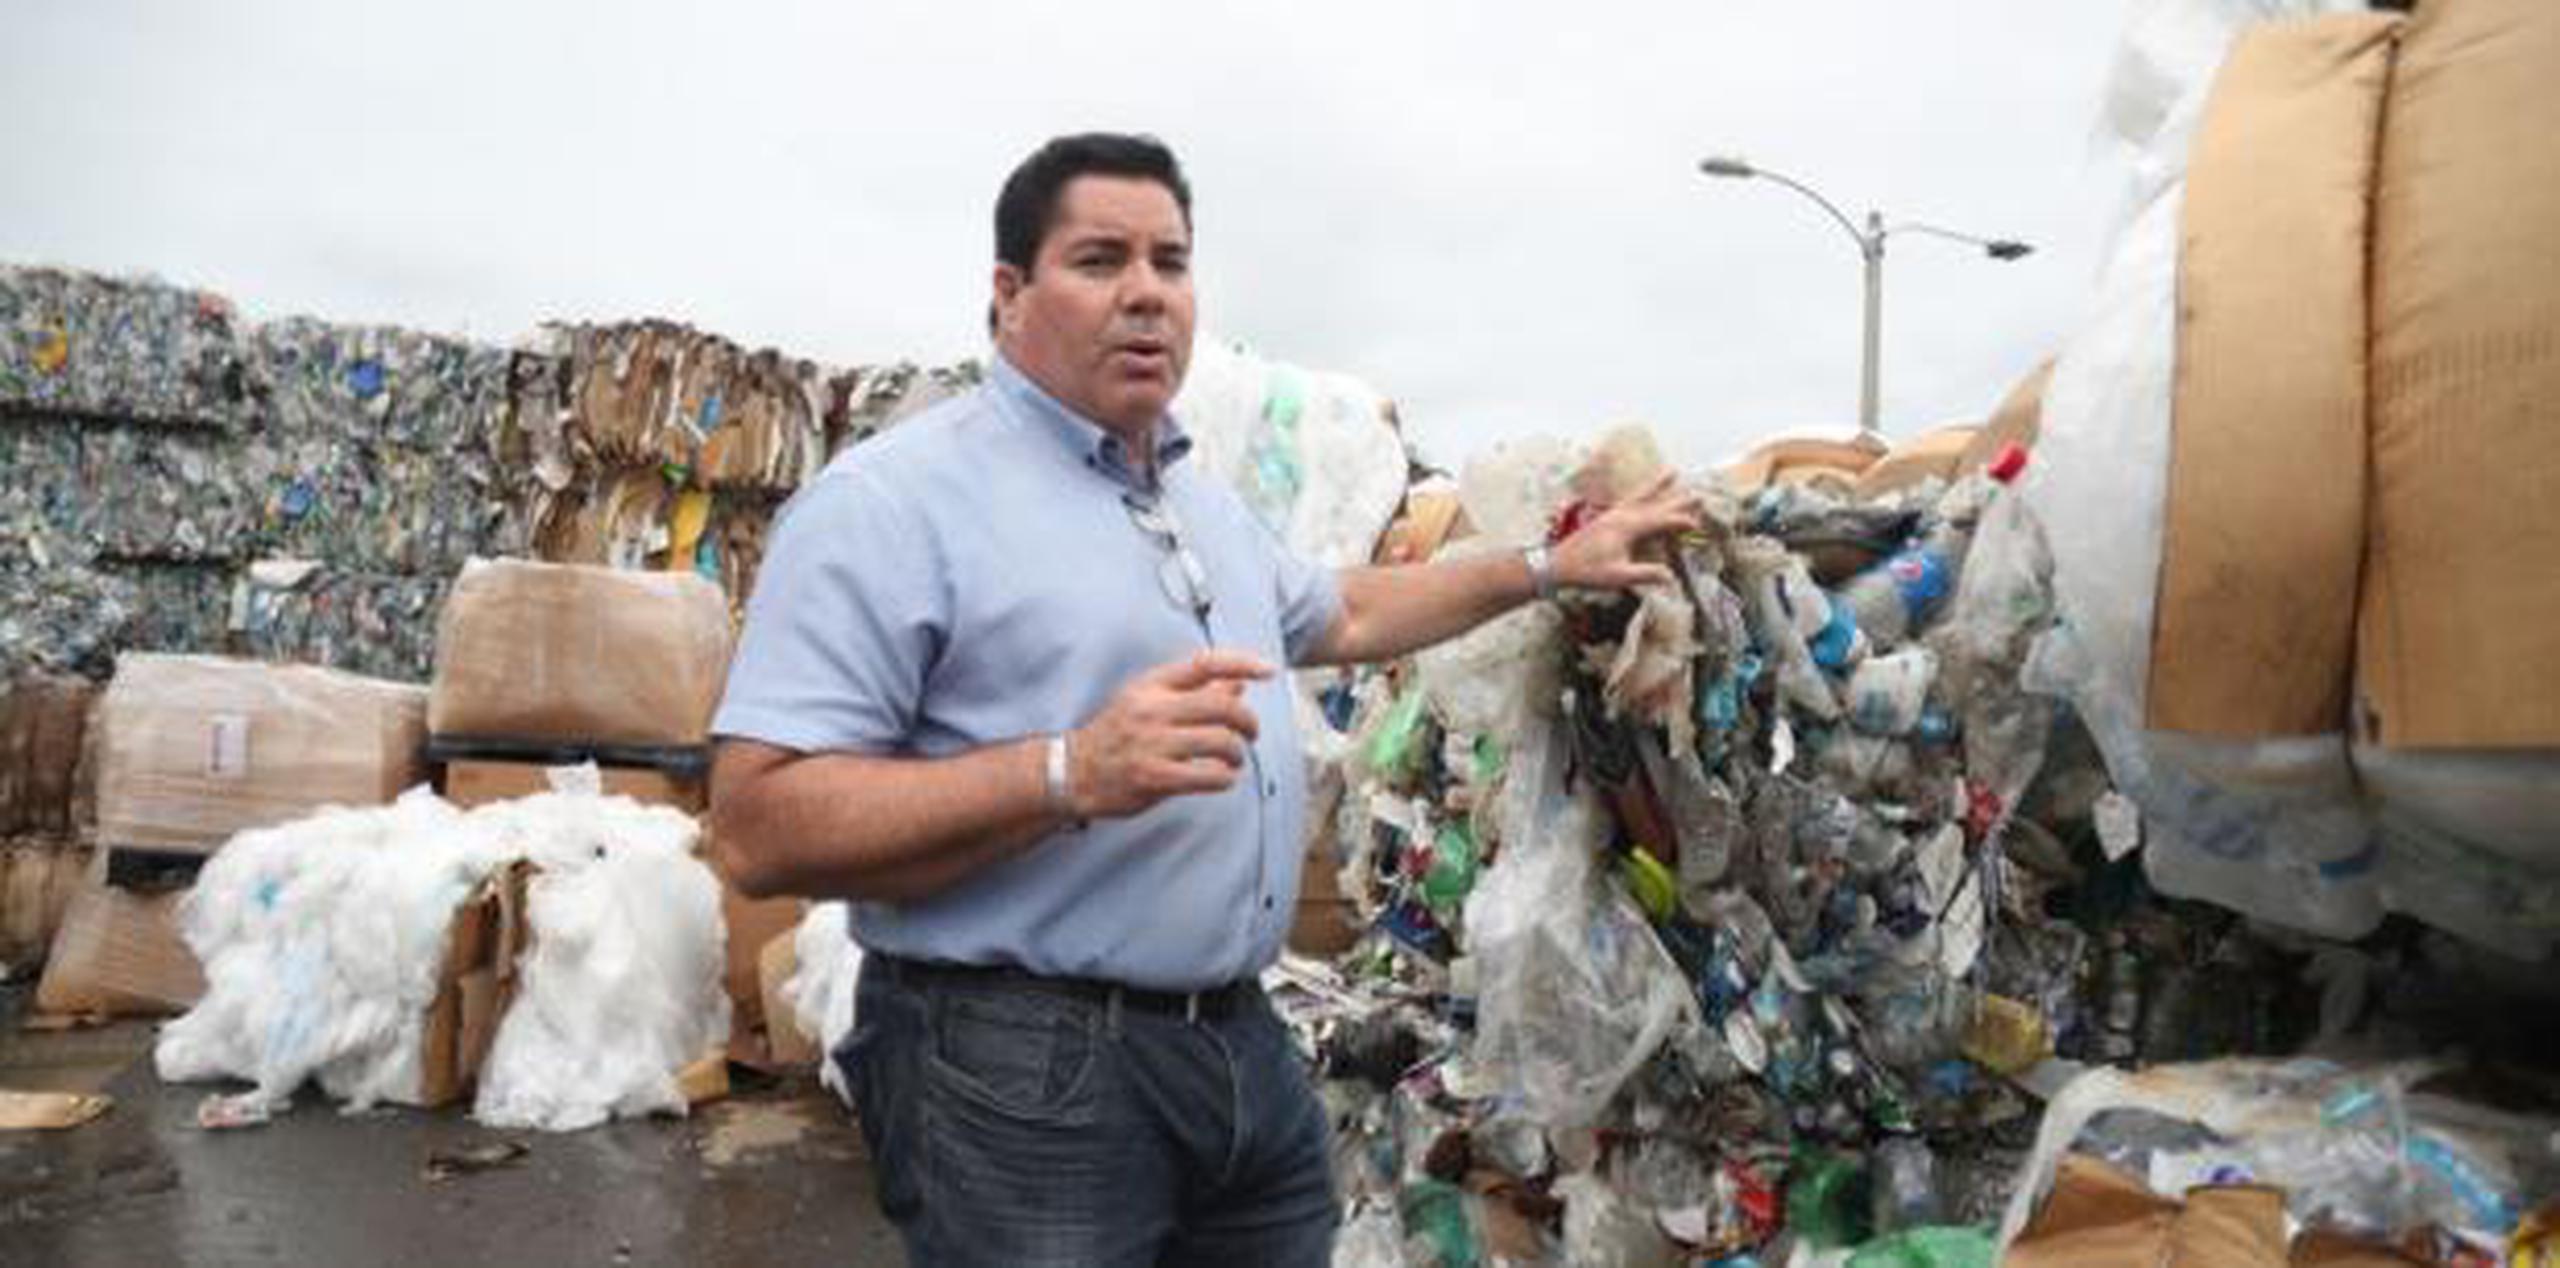 Los programas de reciclajes municipales y las tres plantas recicladoras que existen en Puerto Rico enfrentan un duro golpe con estas exigencias. (vanessa.serra@gfrmedia.com)